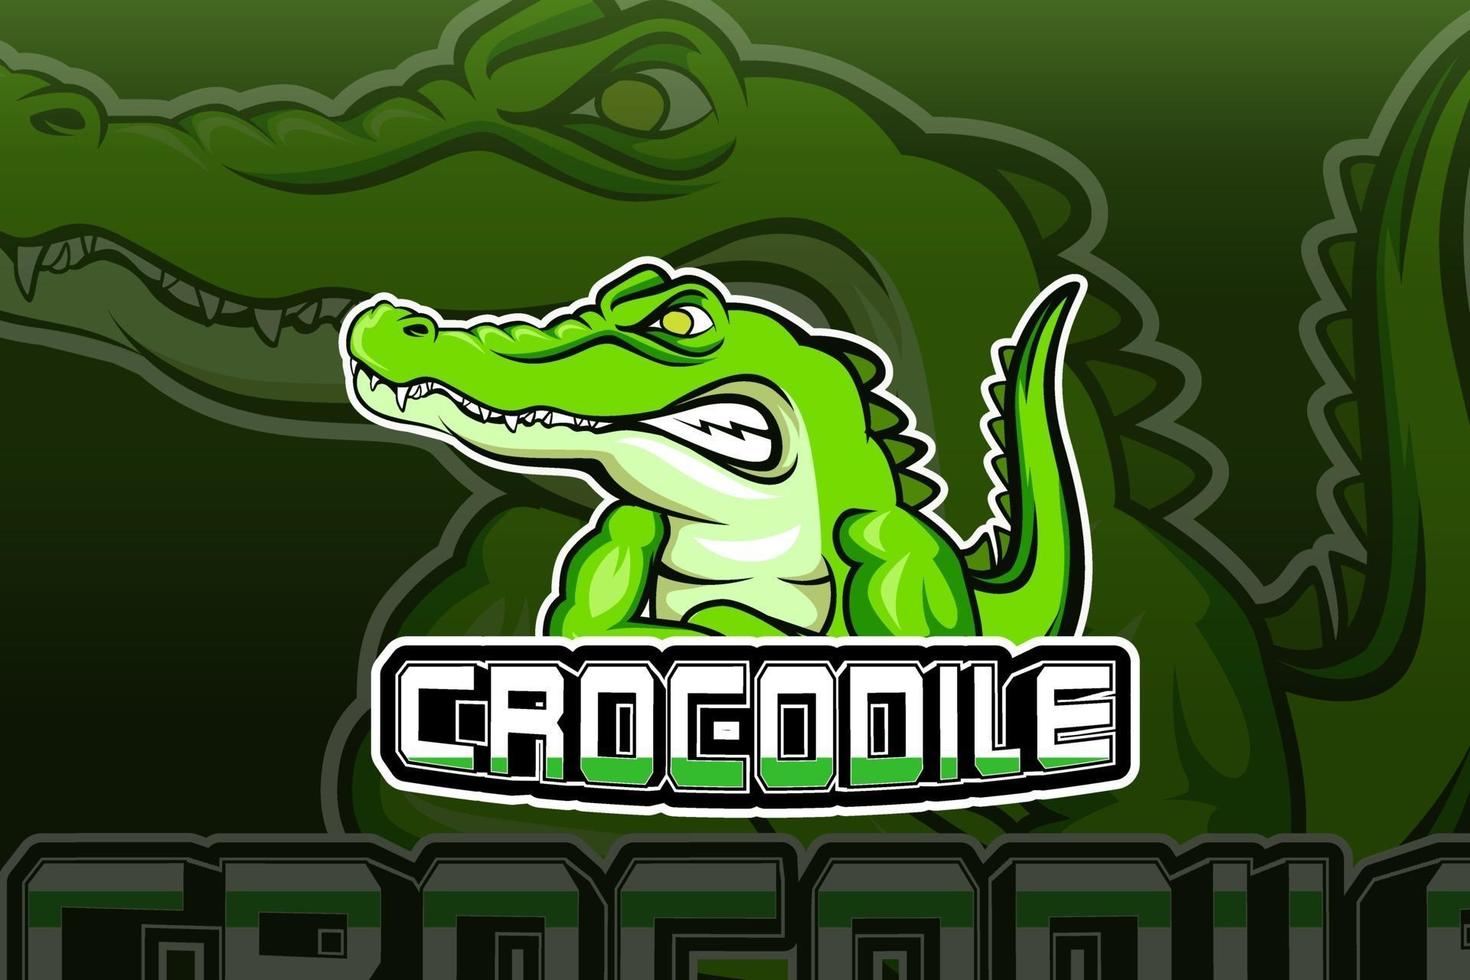 Modelo de logotipo do time de e-sports crocodile vetor